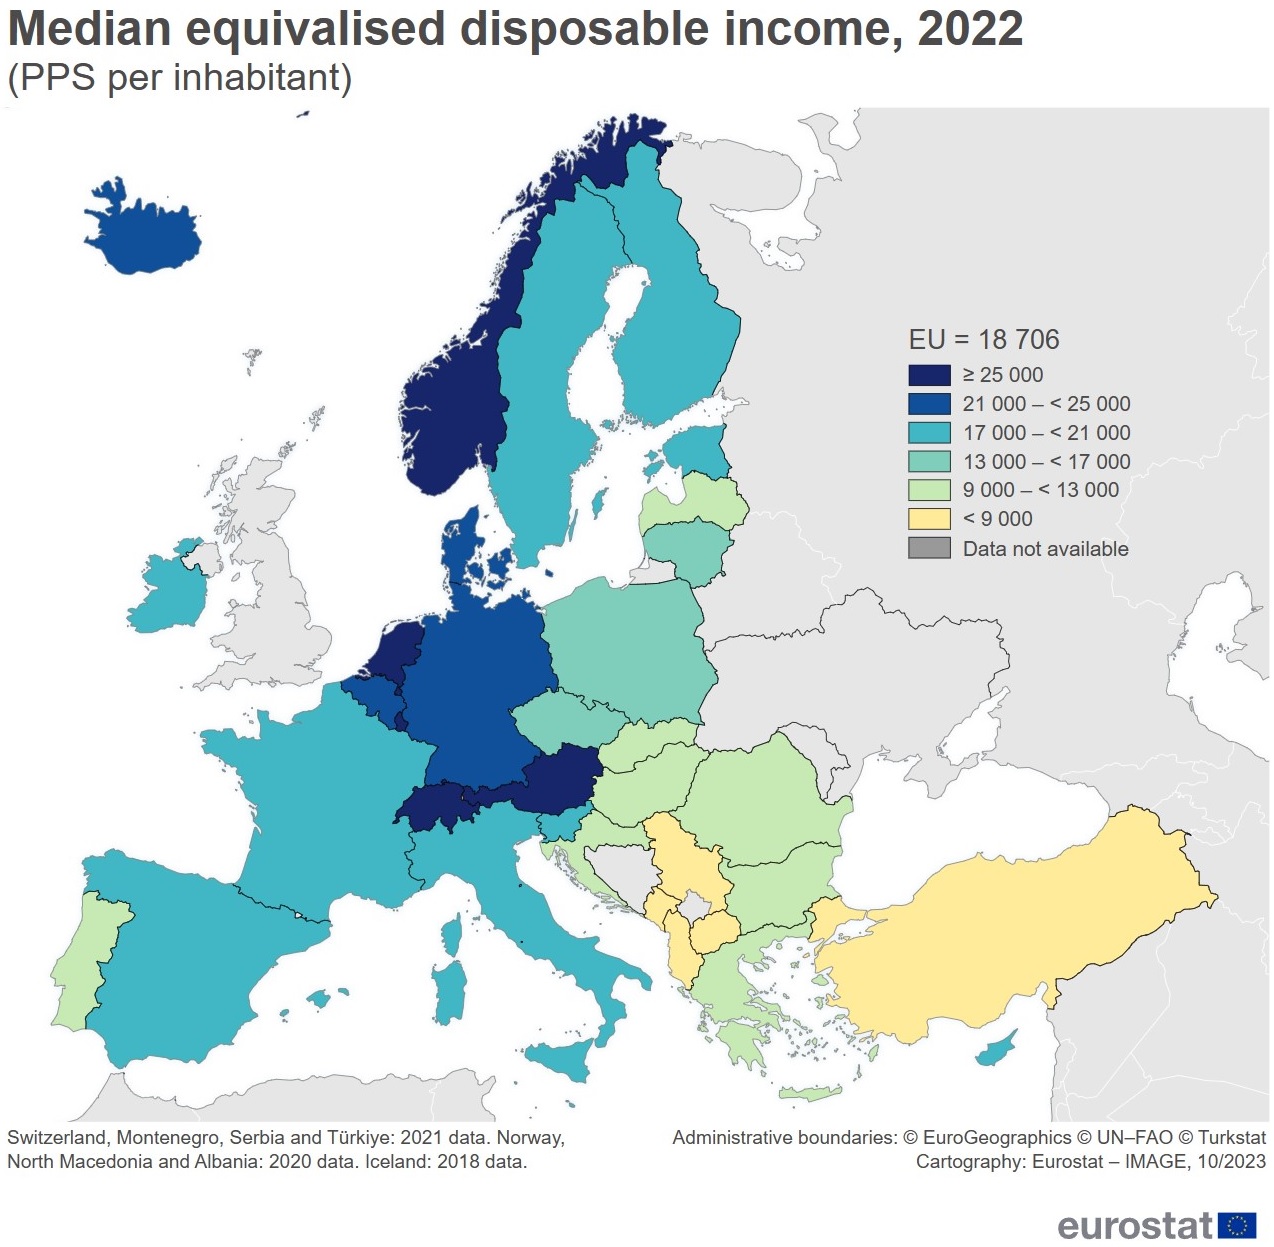 Rozporządzalny dochód brutto gospodarstw domowych na mieszkańca (PPS) w Europie, 2022